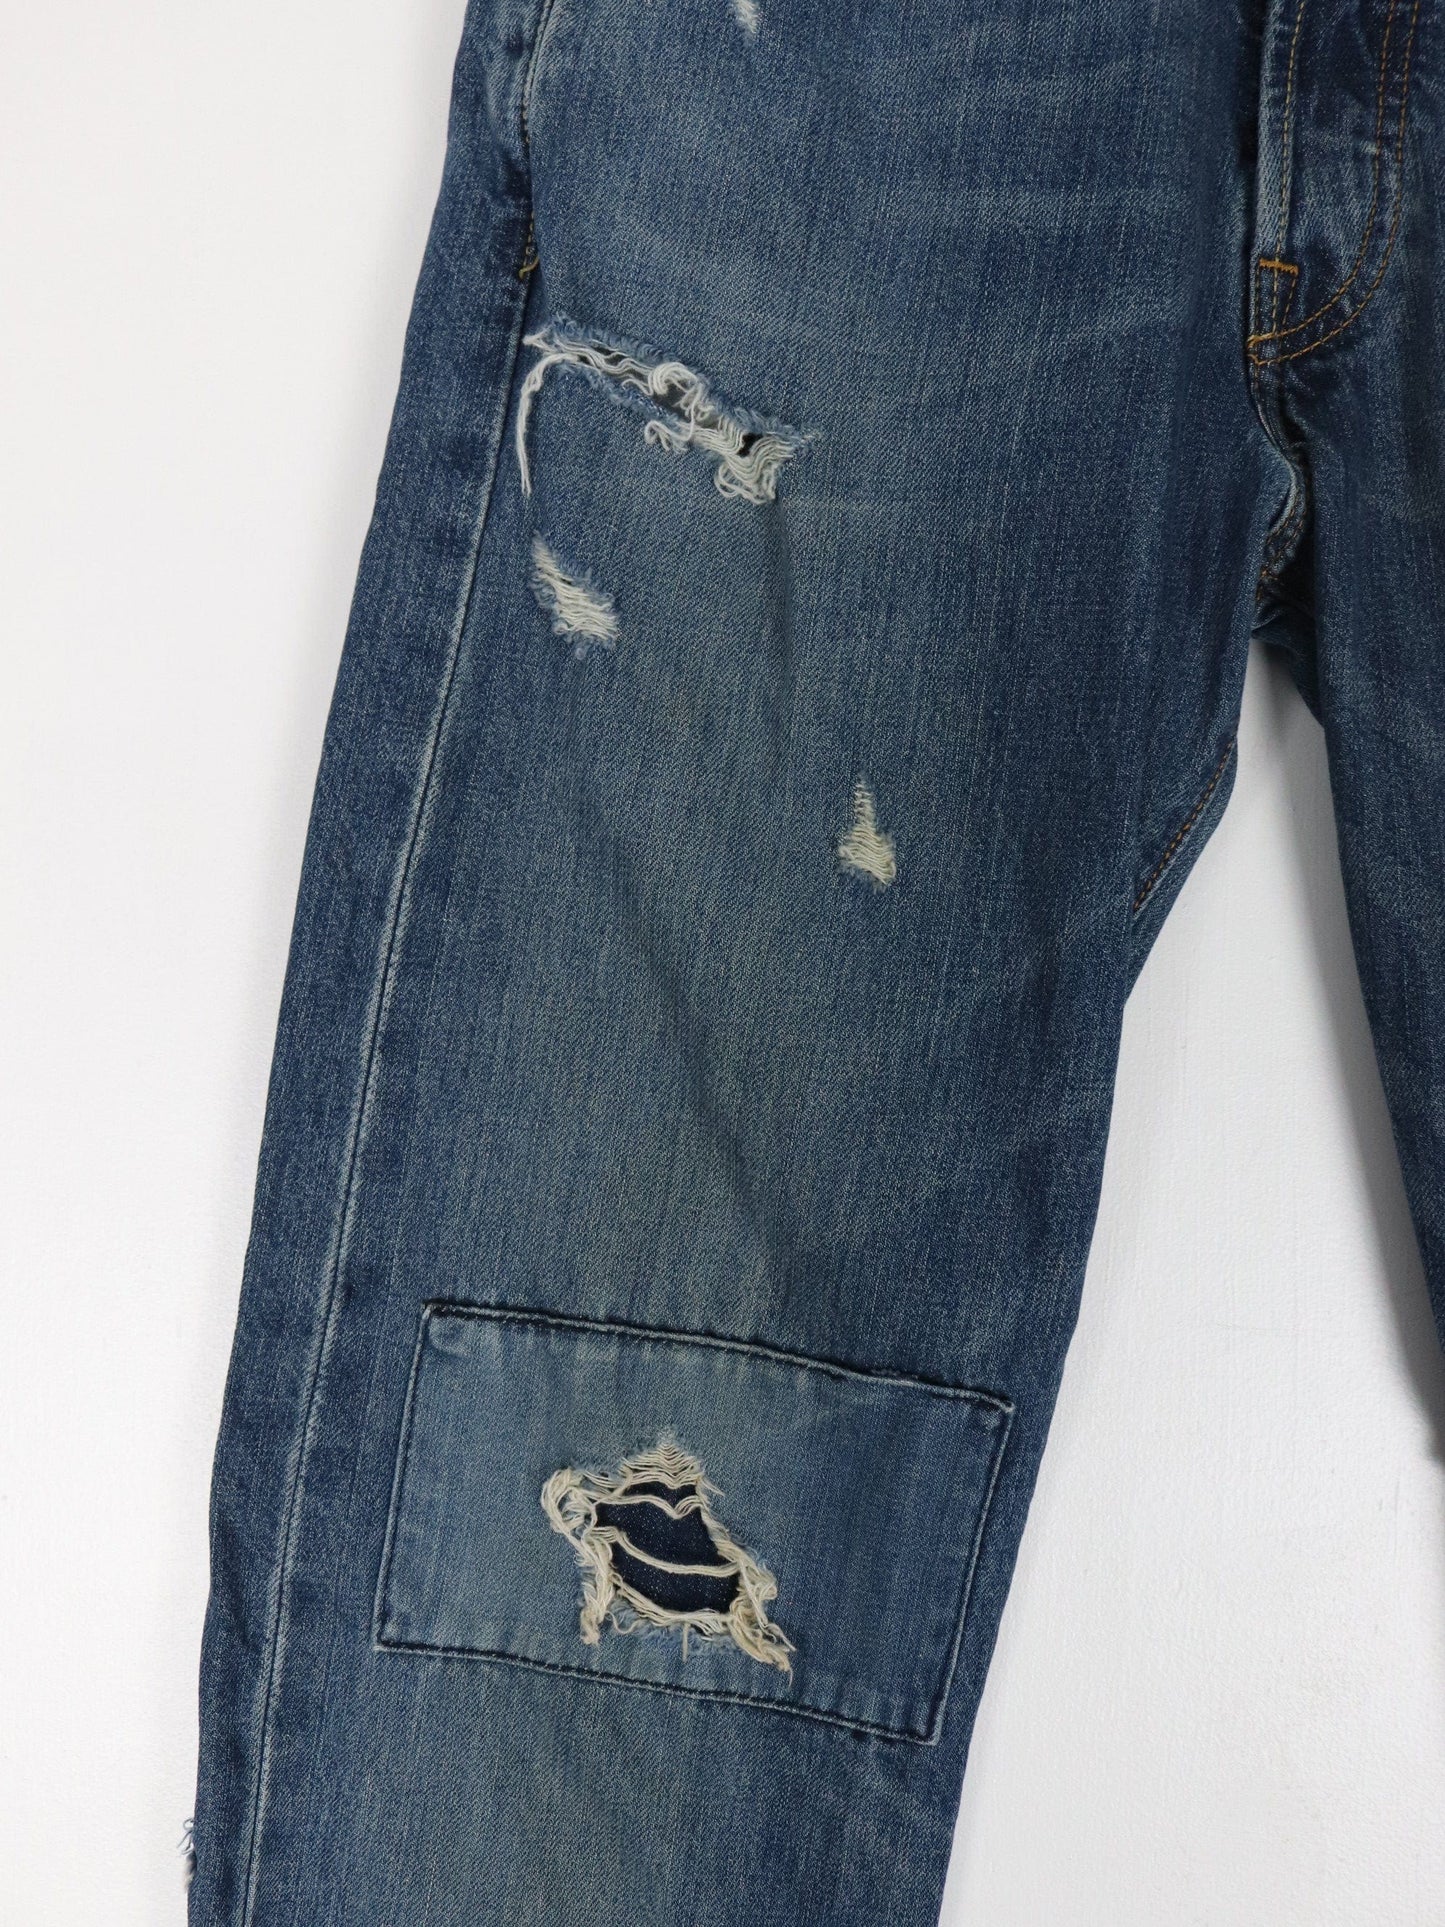 Levi's Jeans Levi's Pants Mens 30 x 31 Blue Denim Jeans Distressed